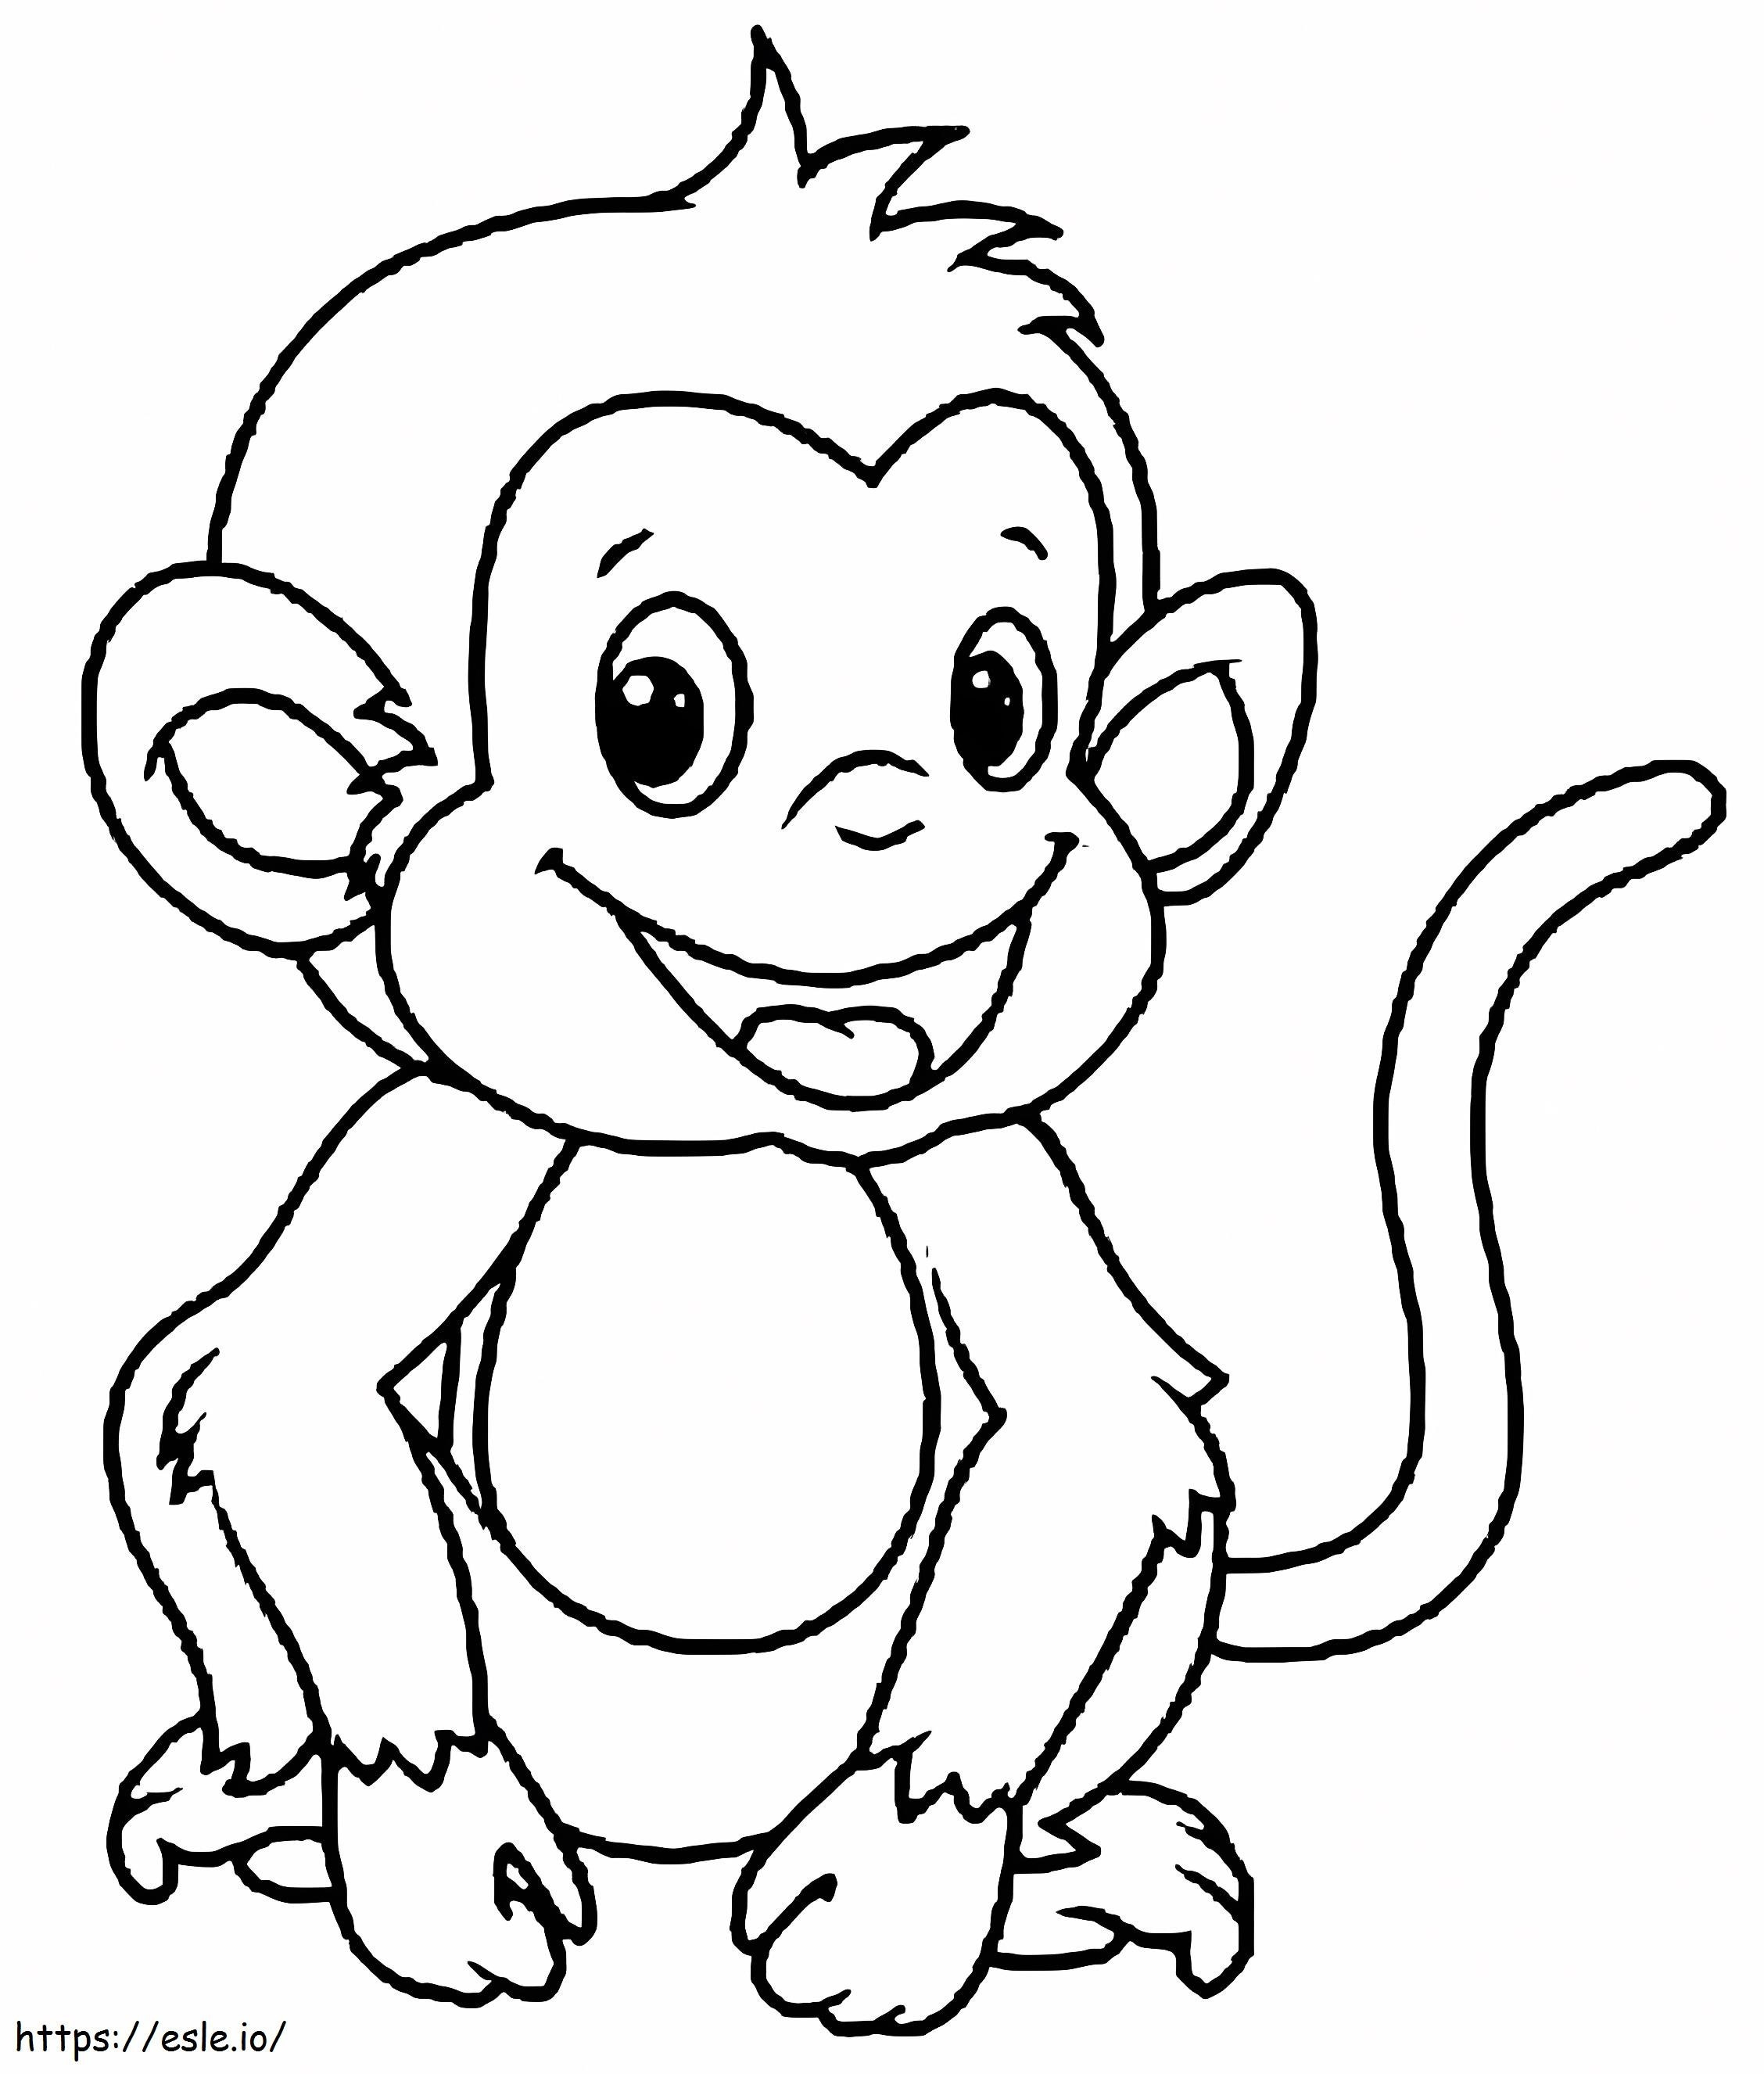 Coloriage Dessin drôle de singe à imprimer dessin